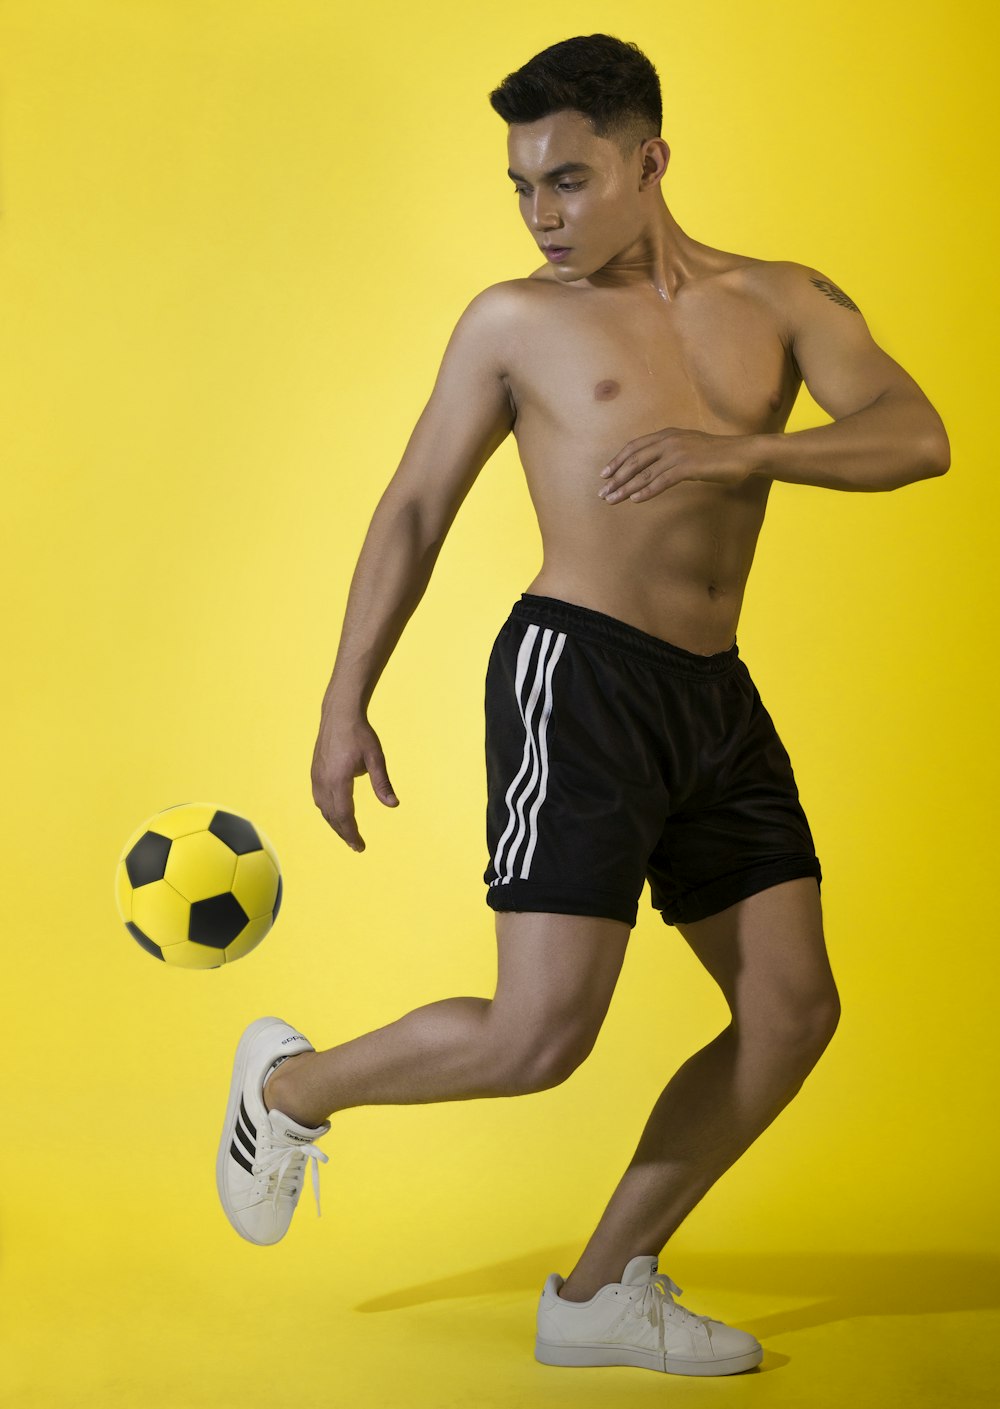 a shirtless man kicking a soccer ball